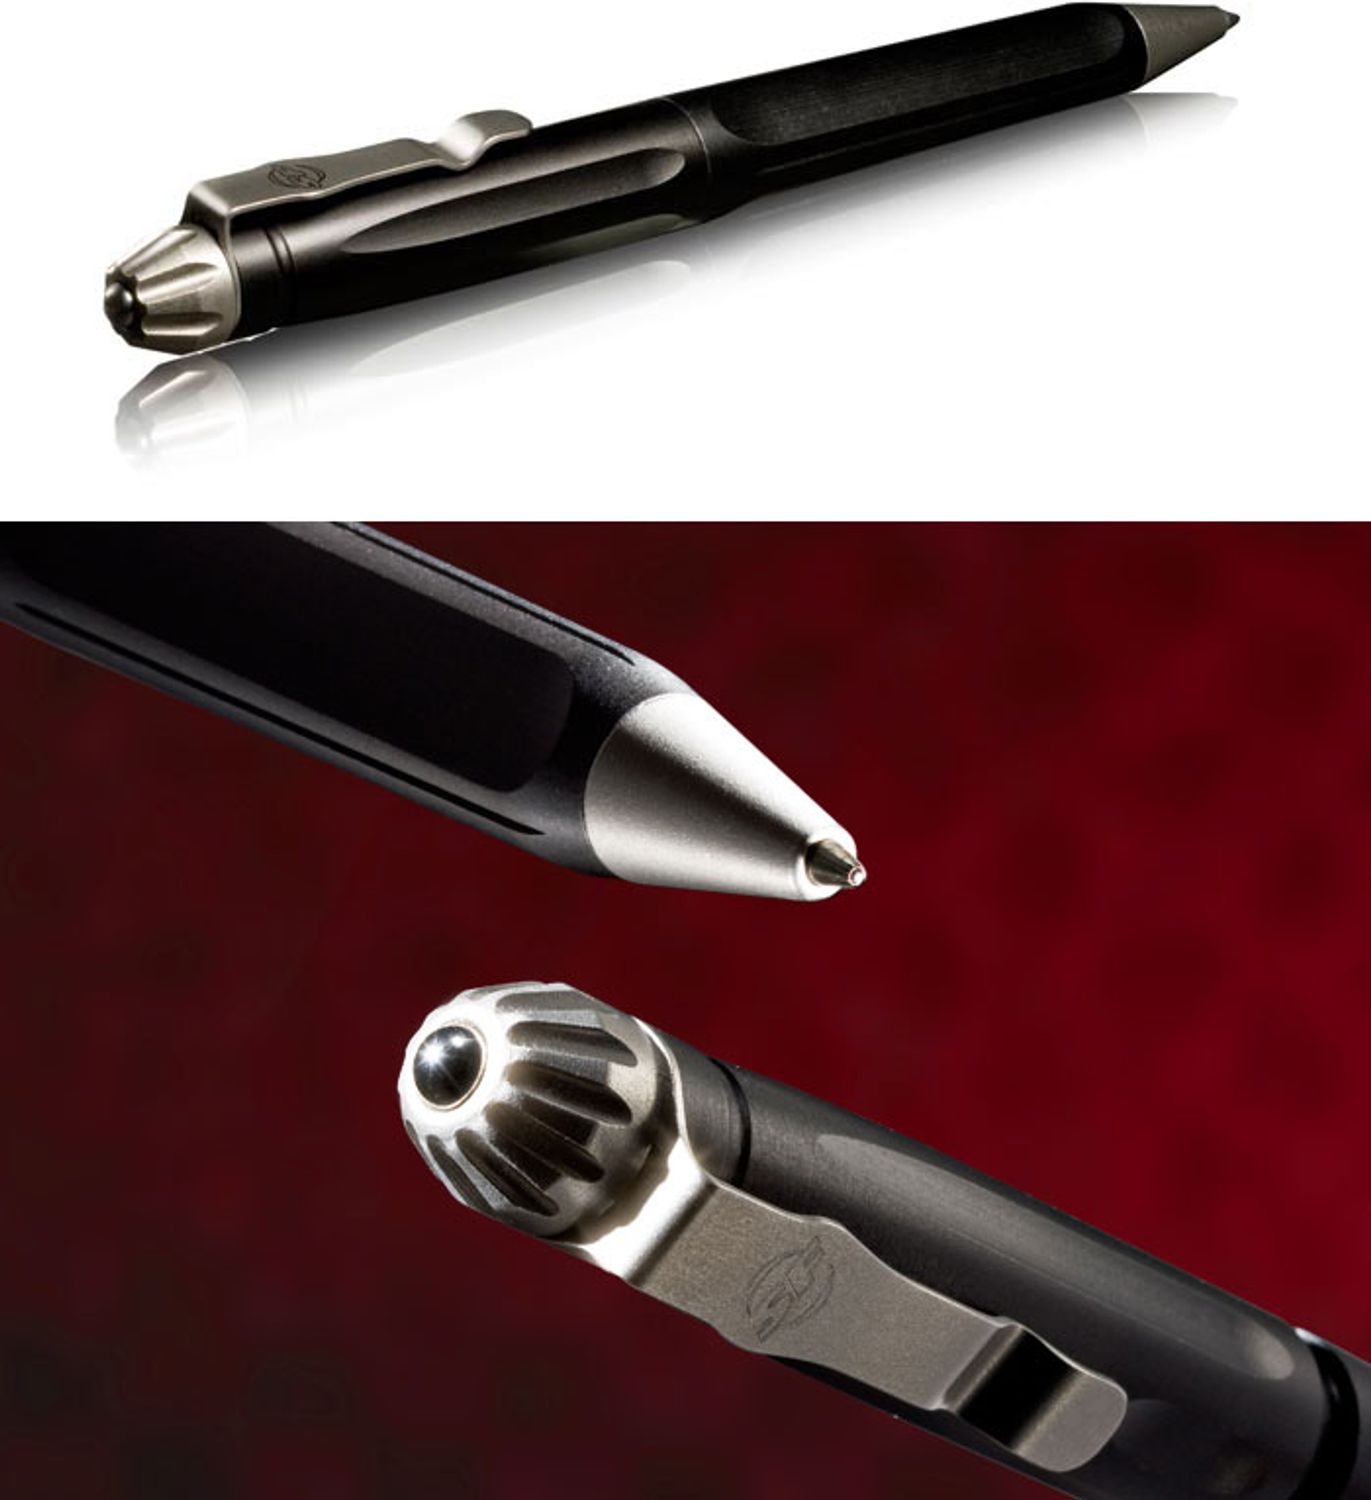 SureFire Tactical Pen with Window Breaker Tip, Black Body